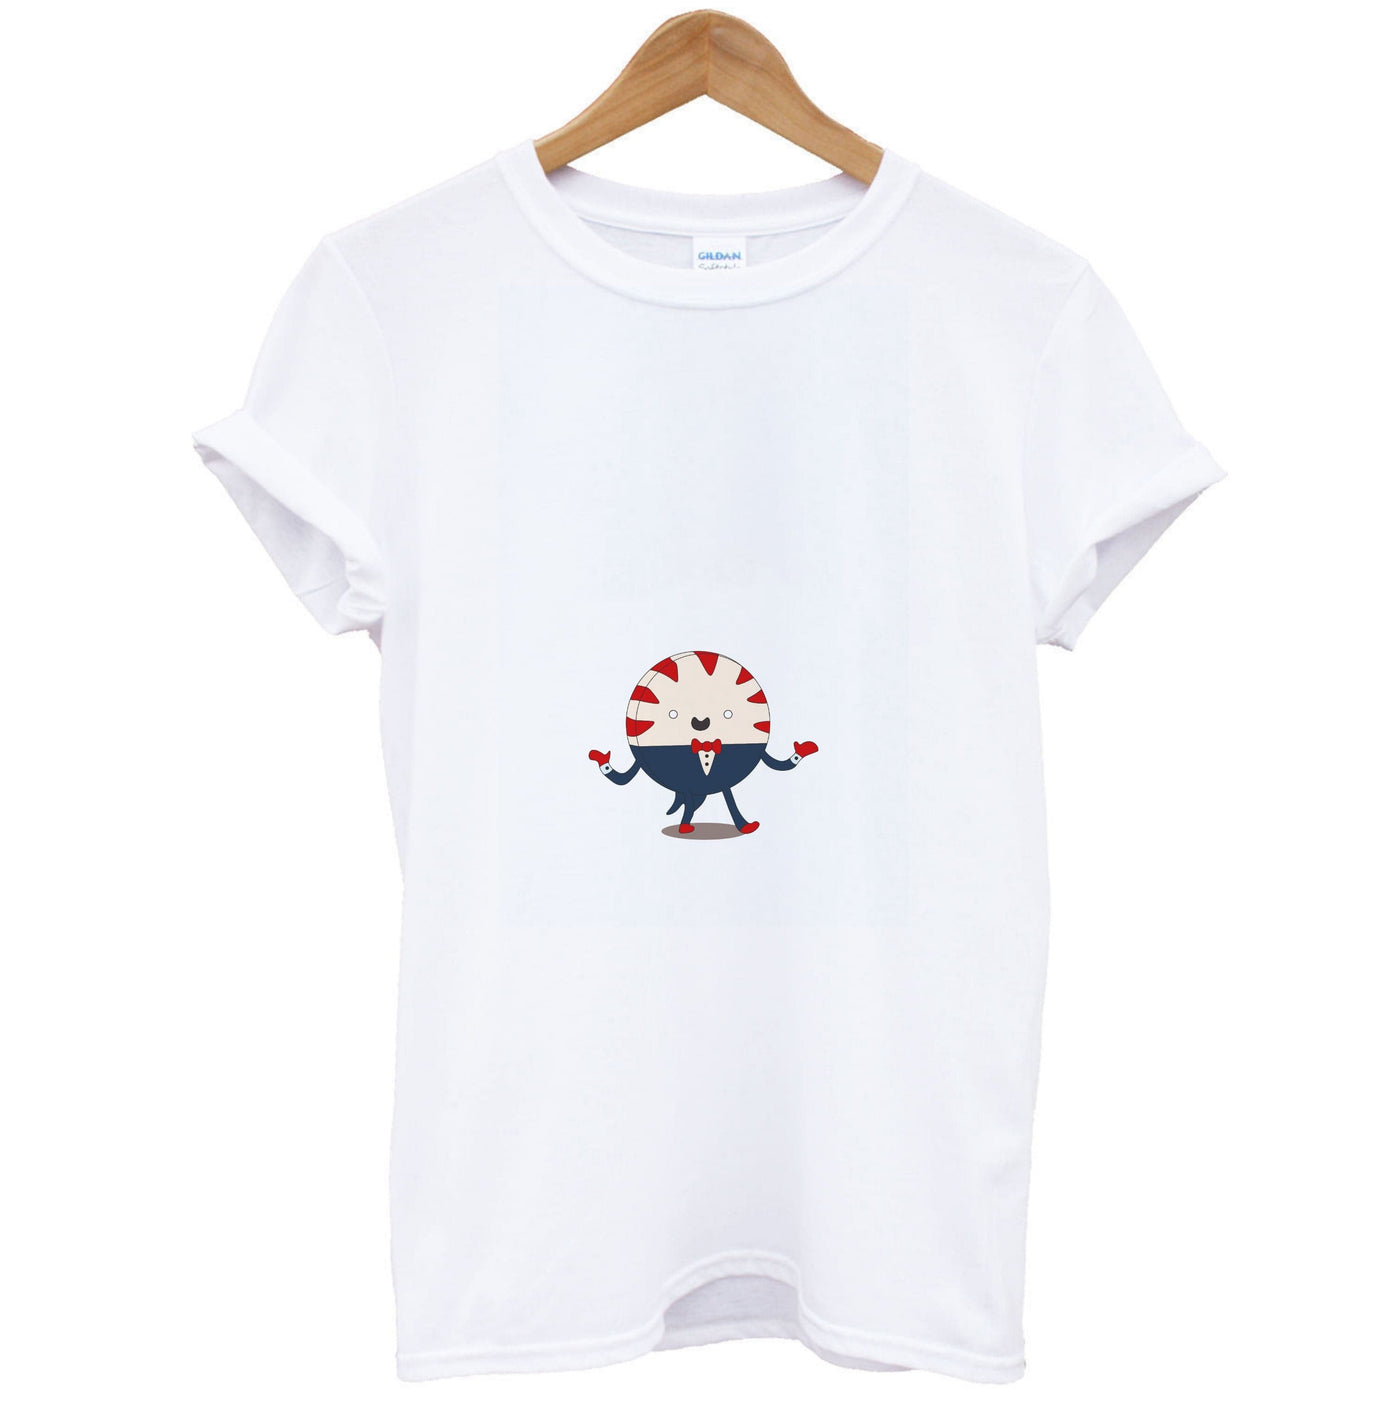 Peppermint Butler - Adventure Time T-Shirt